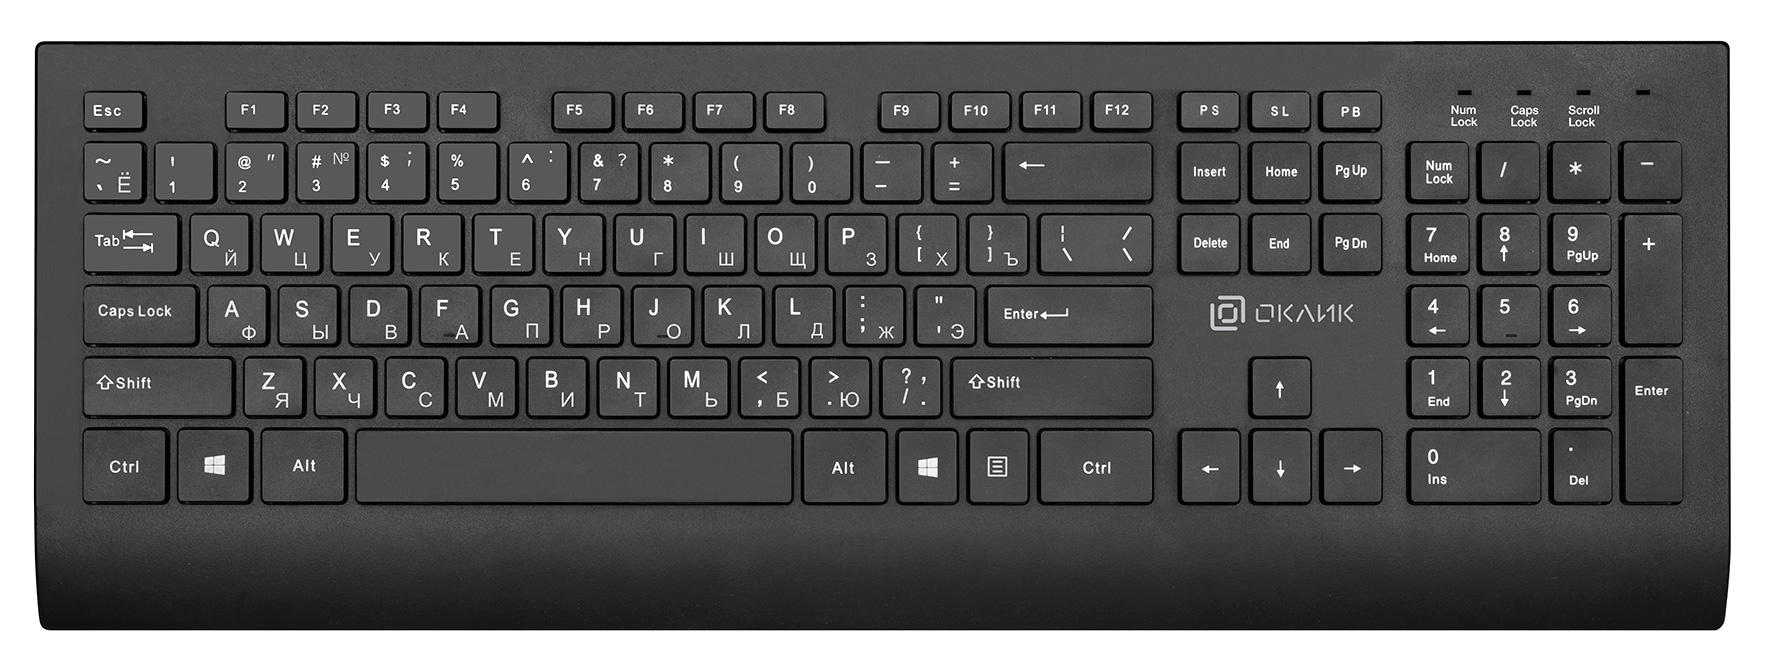 Клавиатура проводная Oklick 155M, мембранная, USB, черный (1678057)